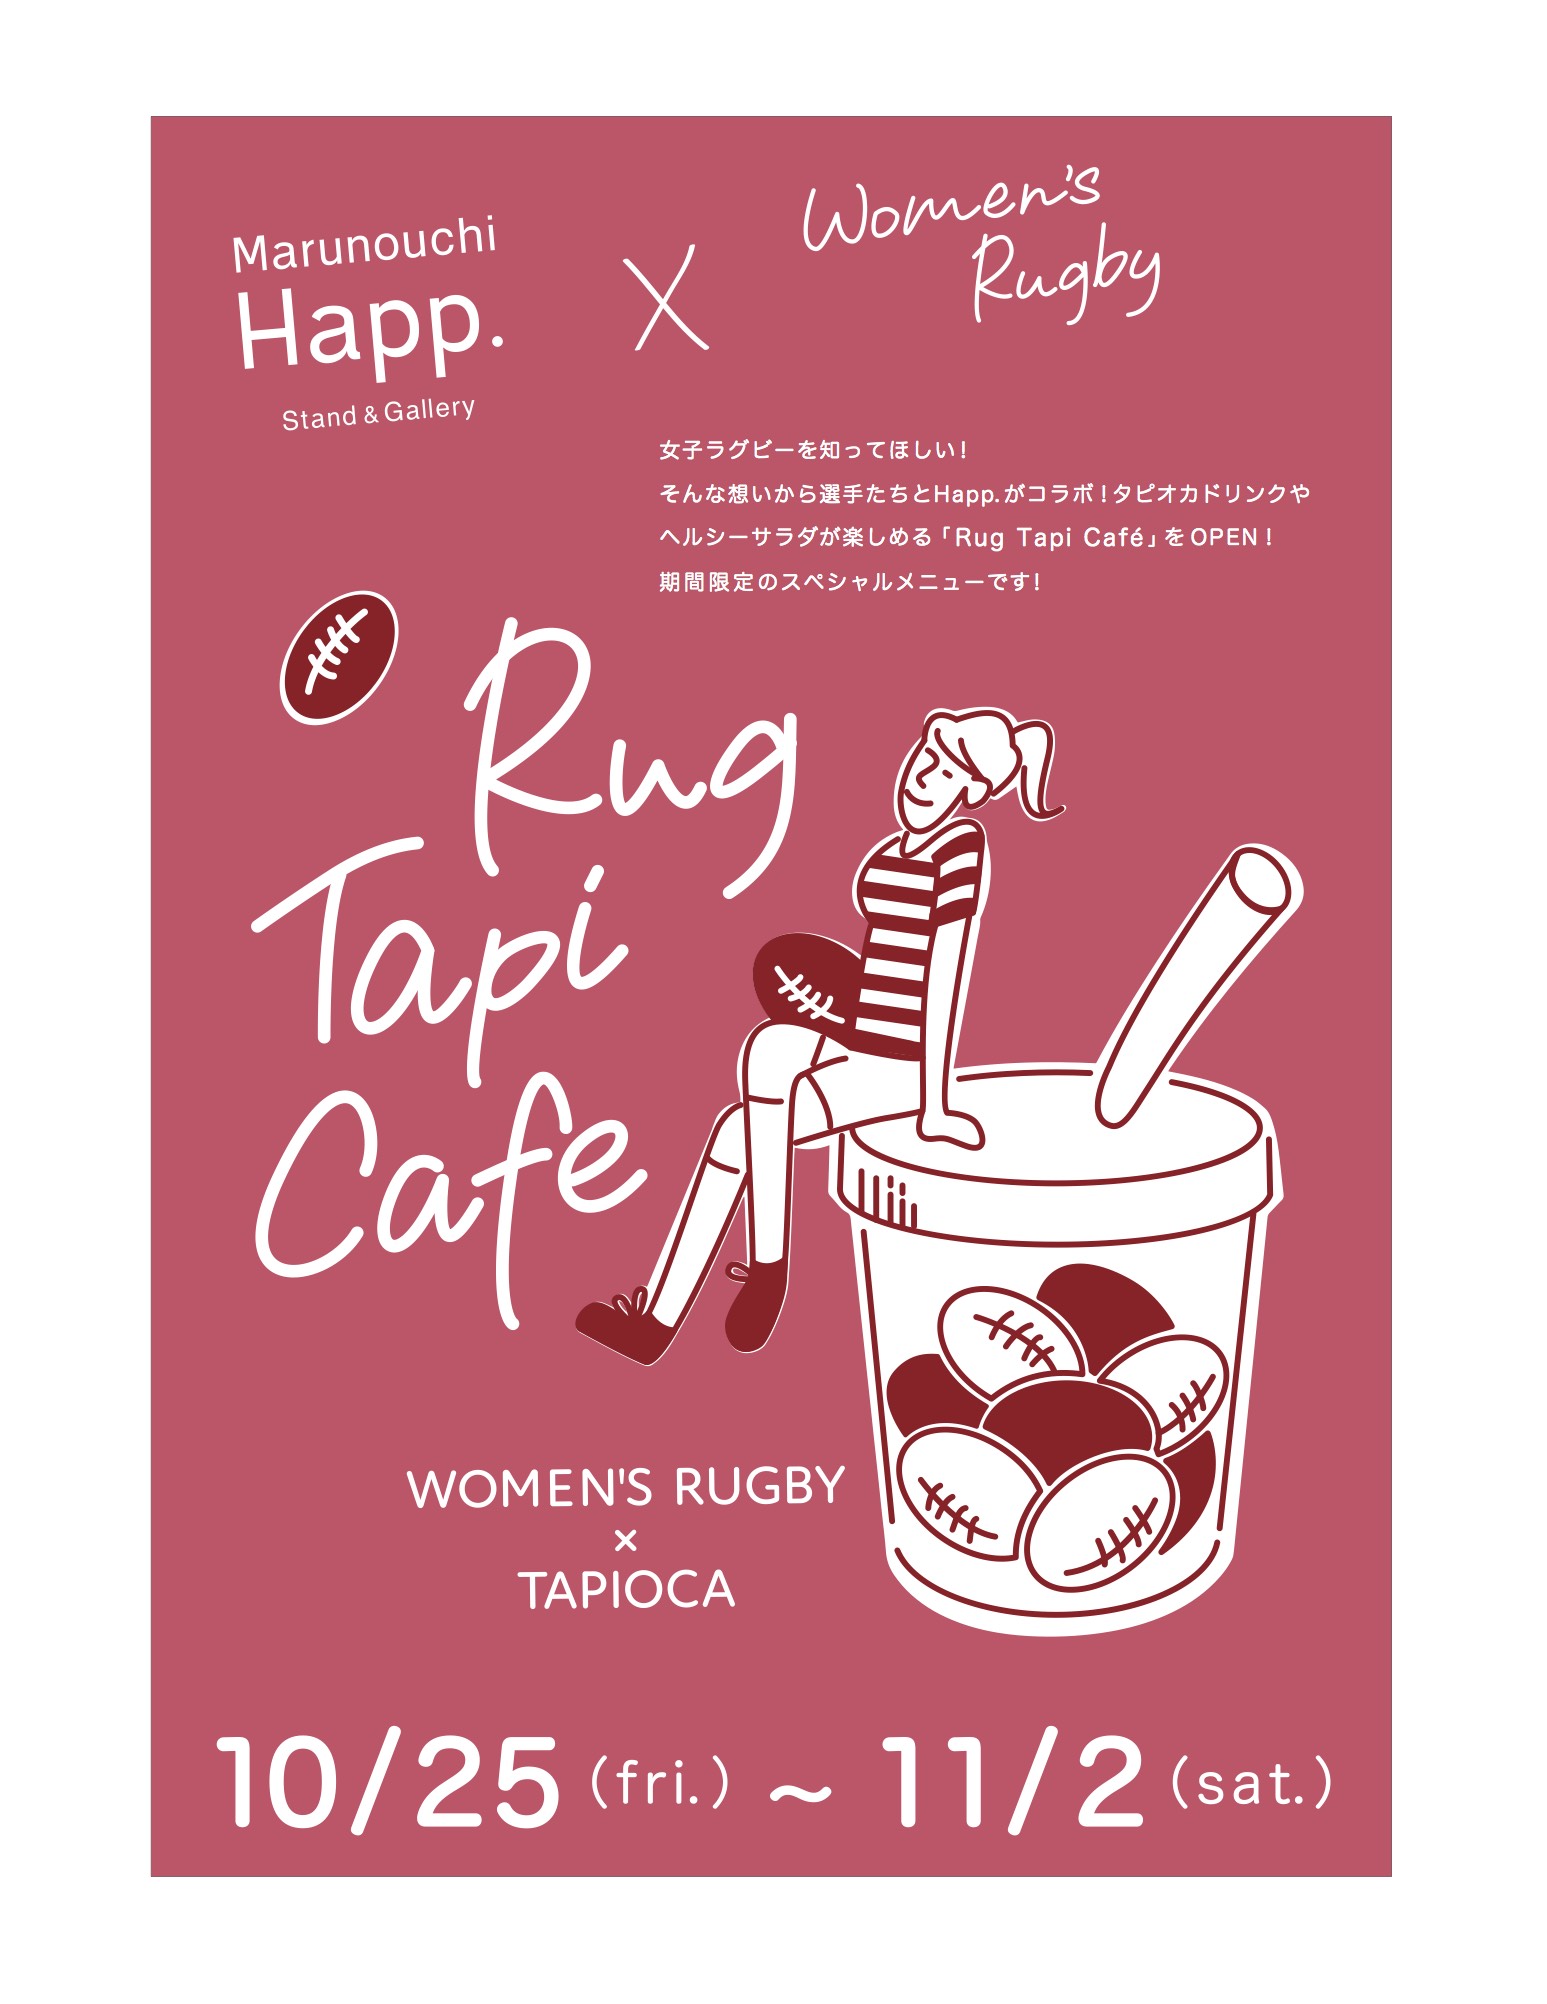 好評につき11/6(水)まで延長決定!! 10/25(金)〜11/2(土)  Marunouchi Happ.×Women’s Rugby「Rug Tapi Cafe」